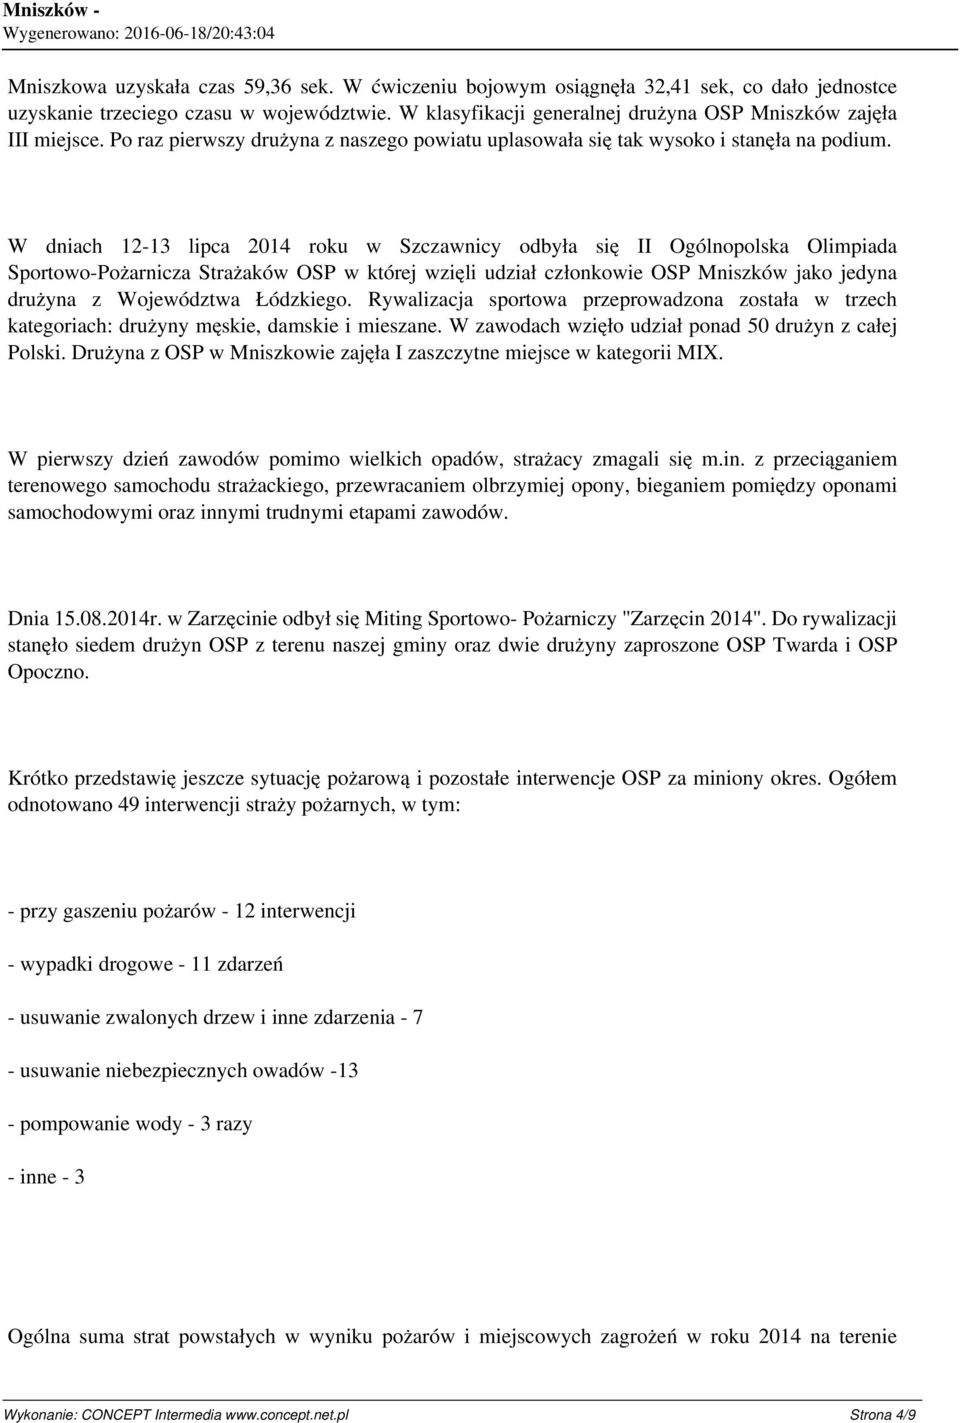 W dniach 12-13 lipca 2014 roku w Szczawnicy odbyła się II Ogólnopolska Olimpiada Sportowo-Pożarnicza Strażaków OSP w której wzięli udział członkowie OSP Mniszków jako jedyna drużyna z Województwa